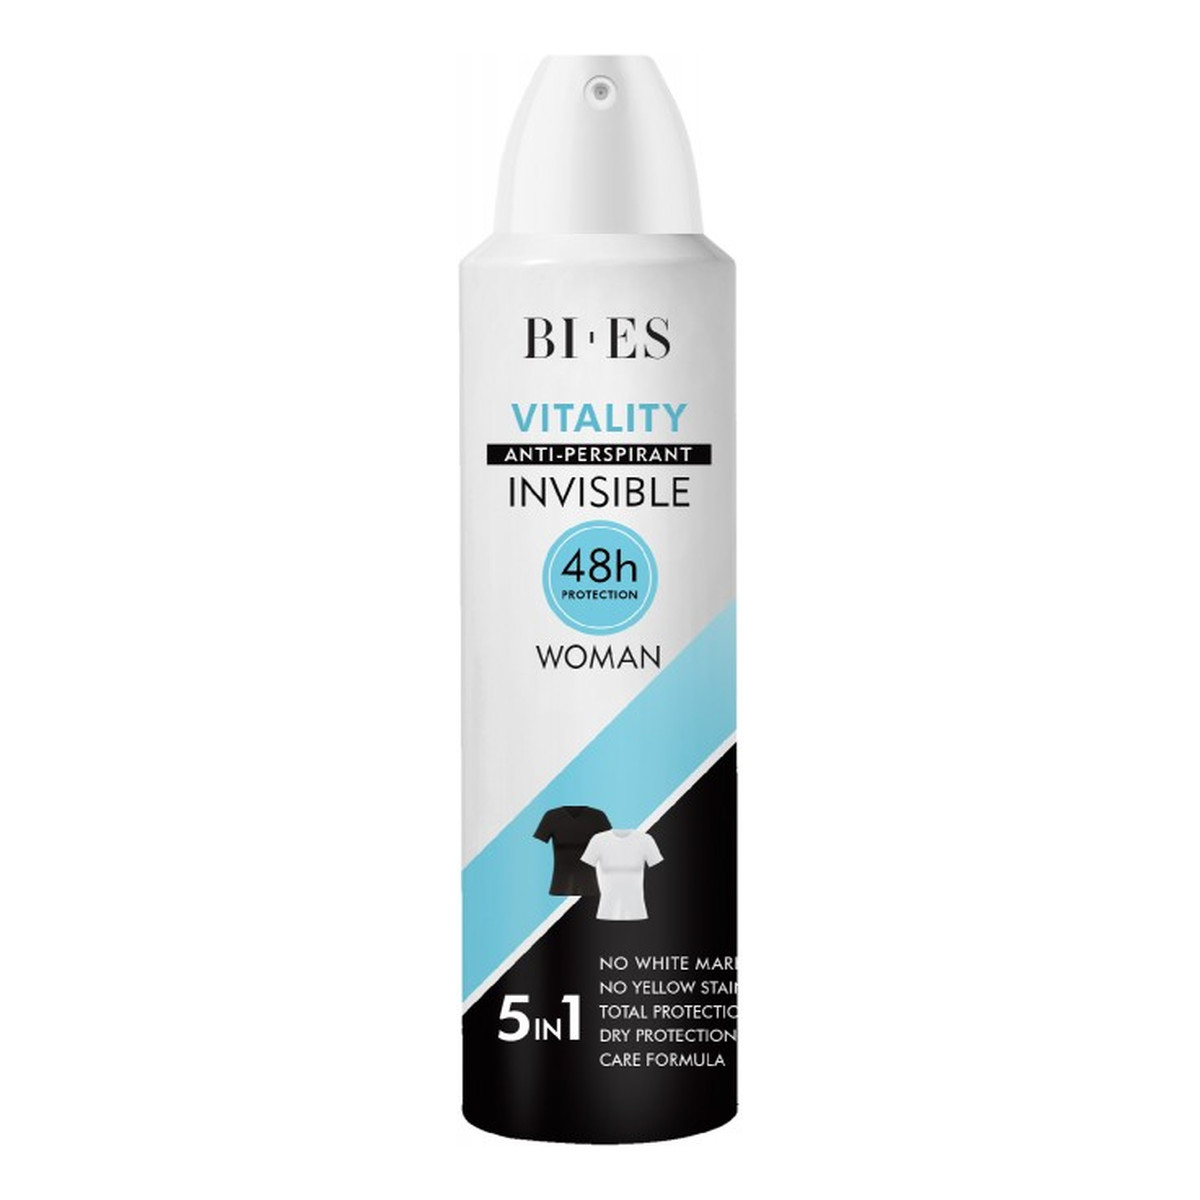 Bi-es Invisible Dezodorant anti-perspirant 5in1 Vitality 150ml